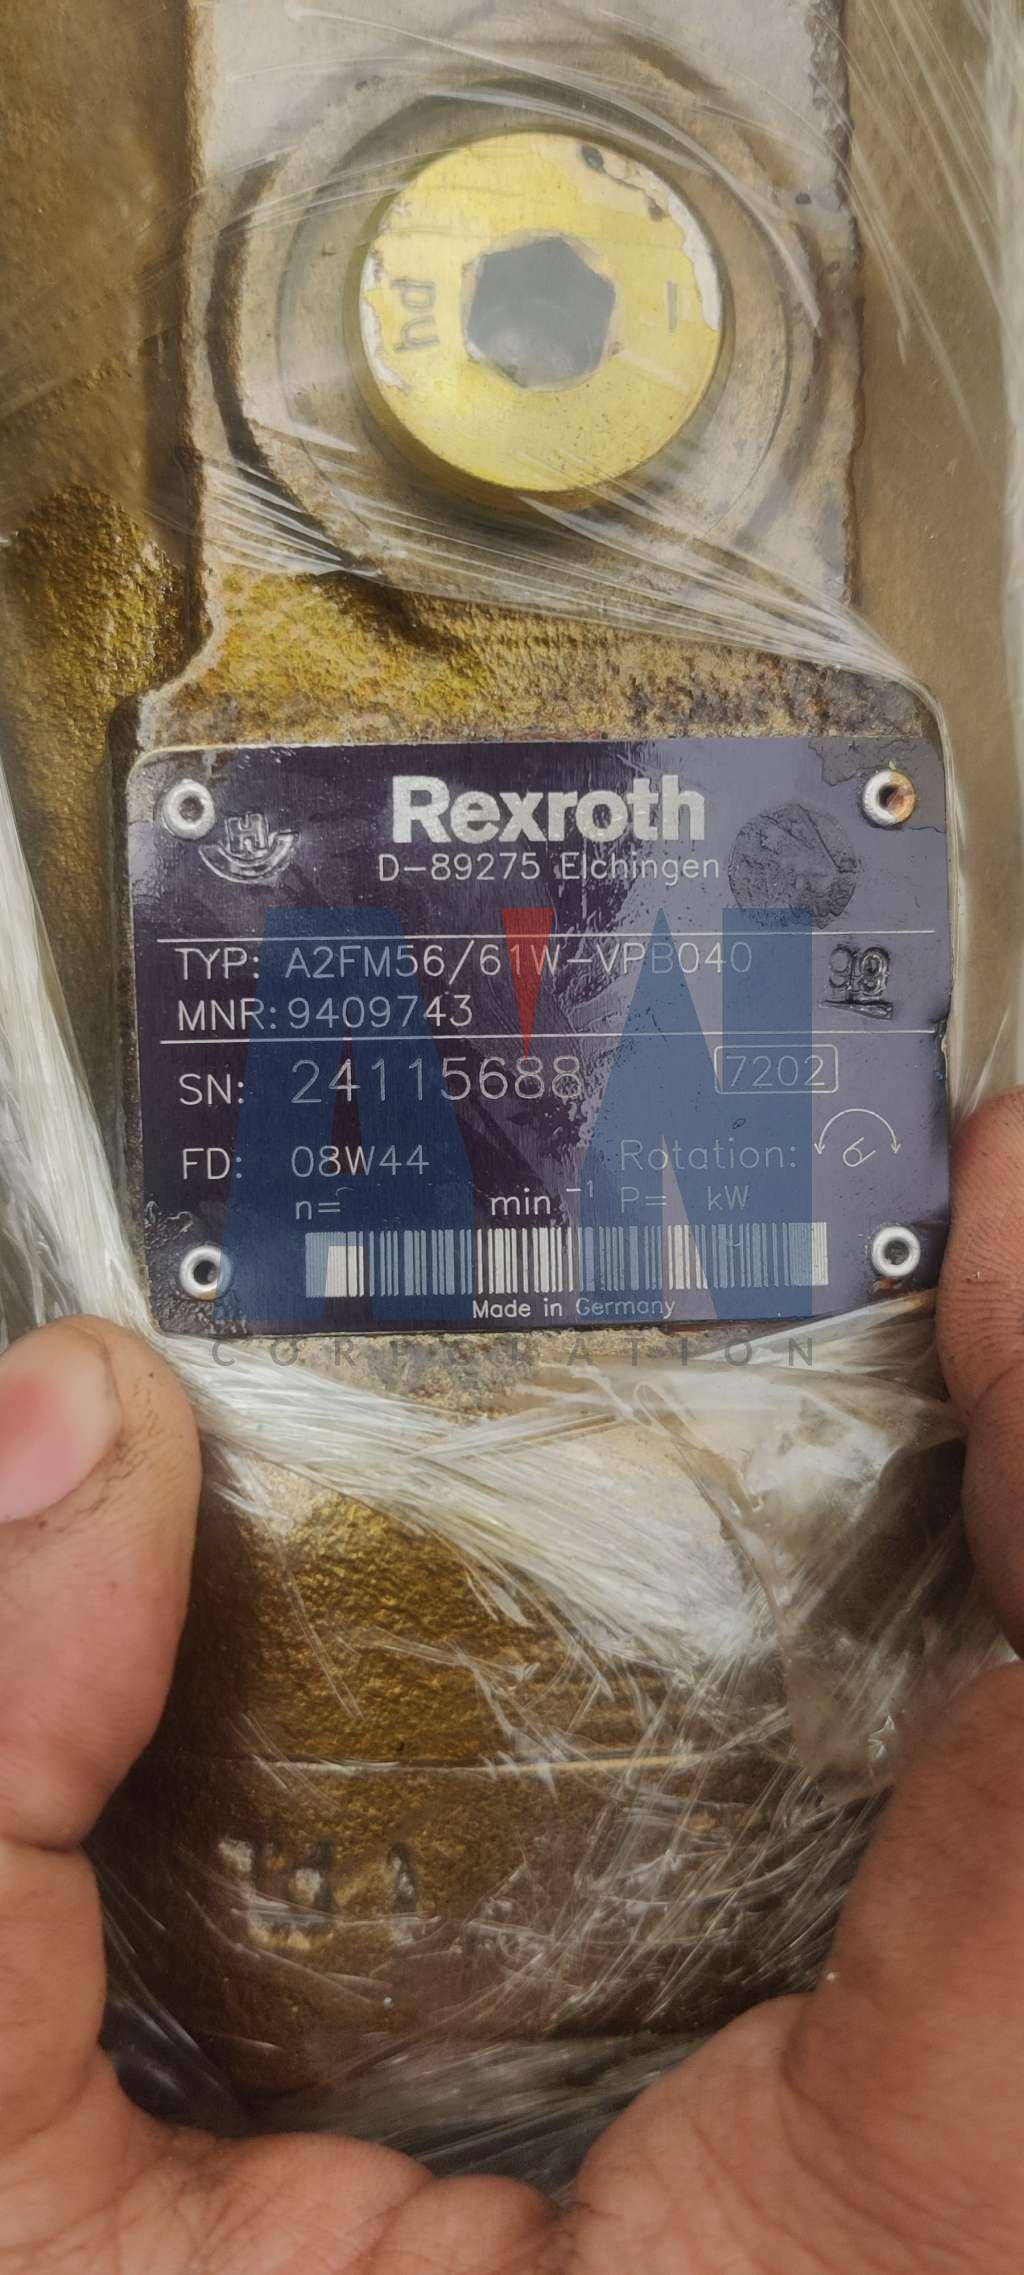 Rexroth A2FM56/61W-VPB040 Hydraulic Pump